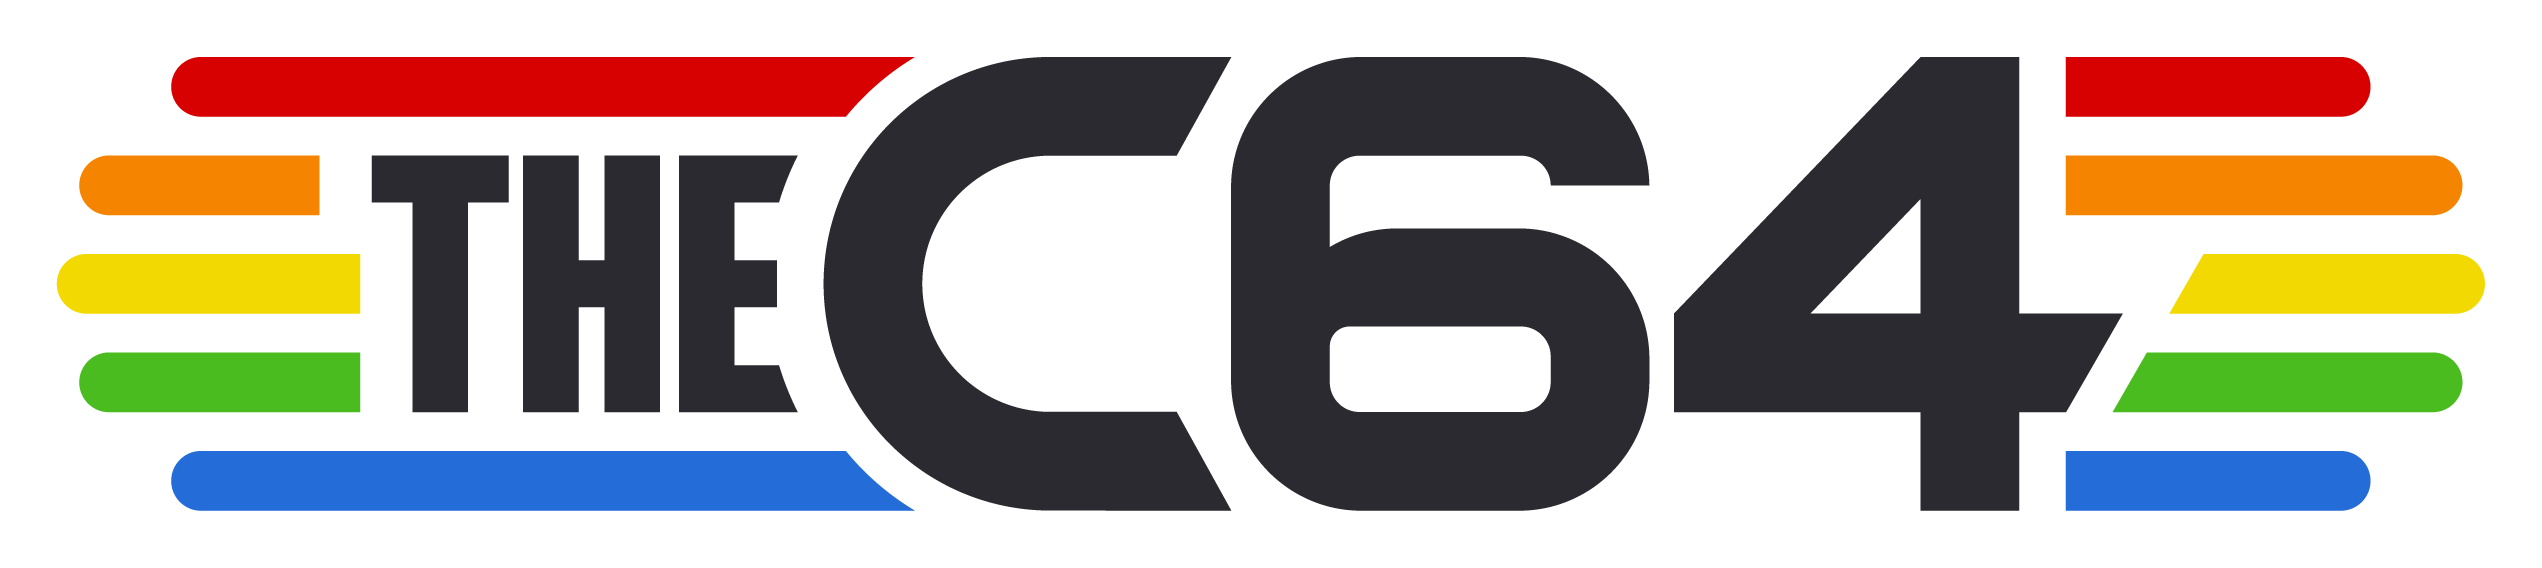 C64 Logo - The C64